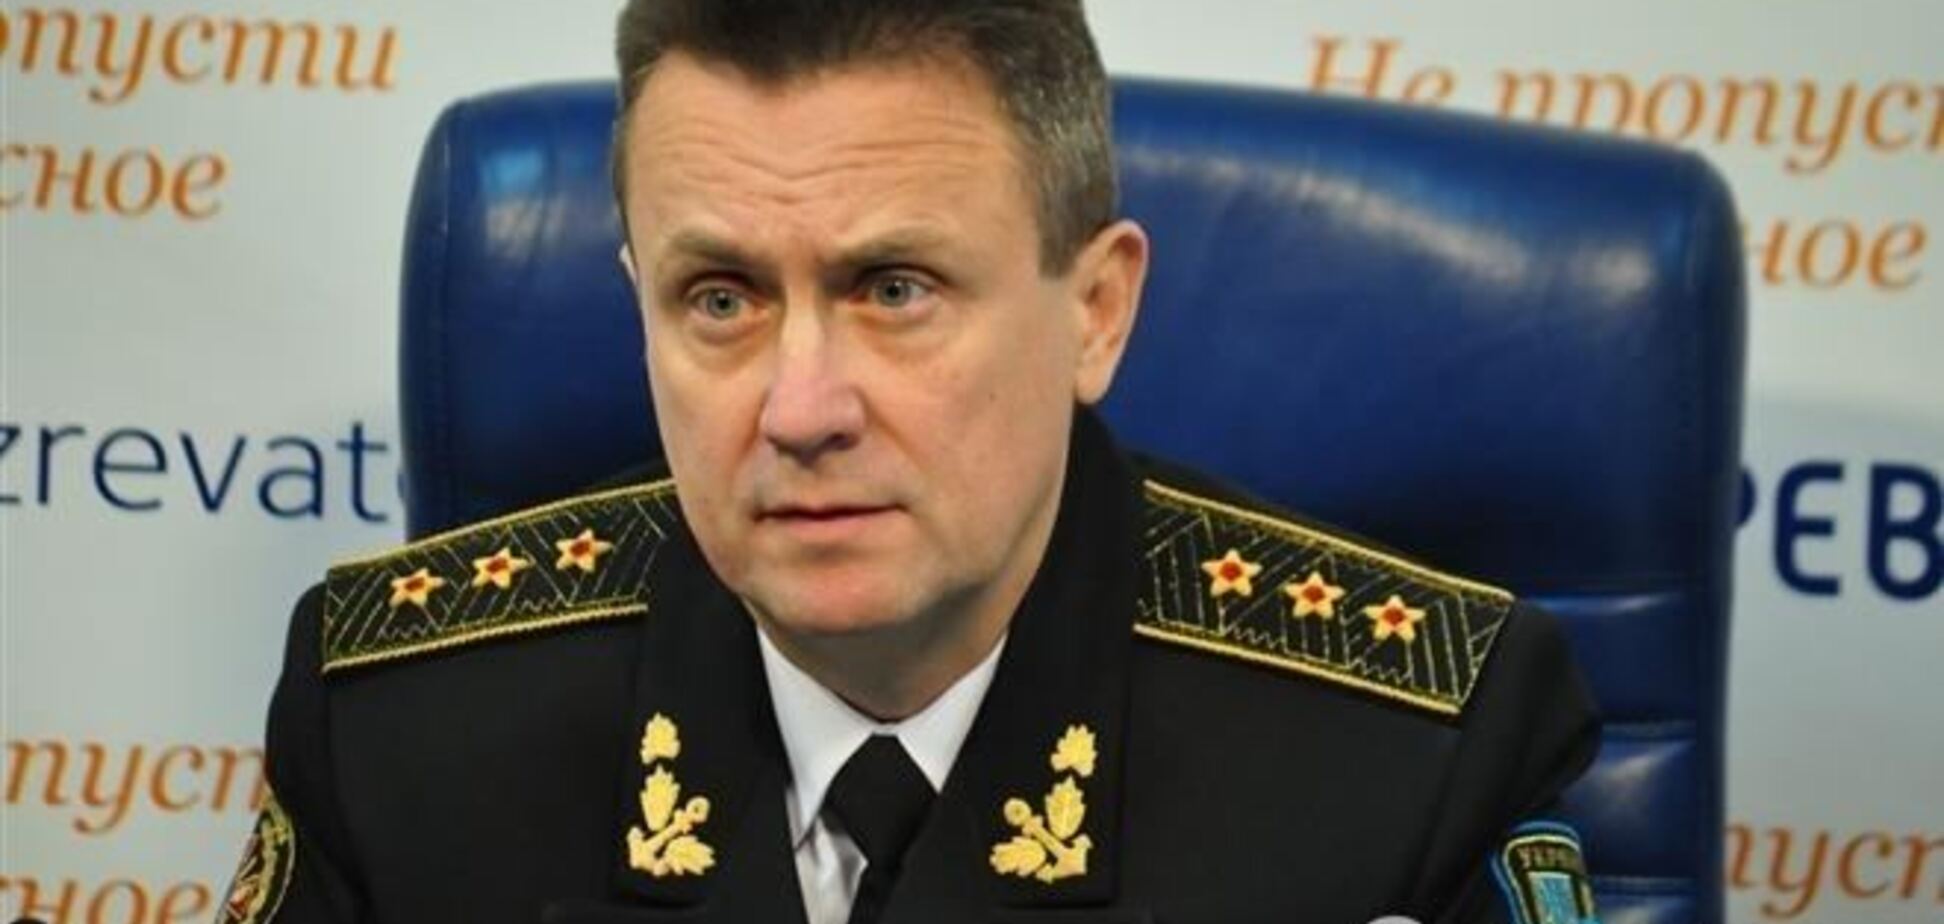 Вице-адмирал: Путин хочет построить новый мировой порядок